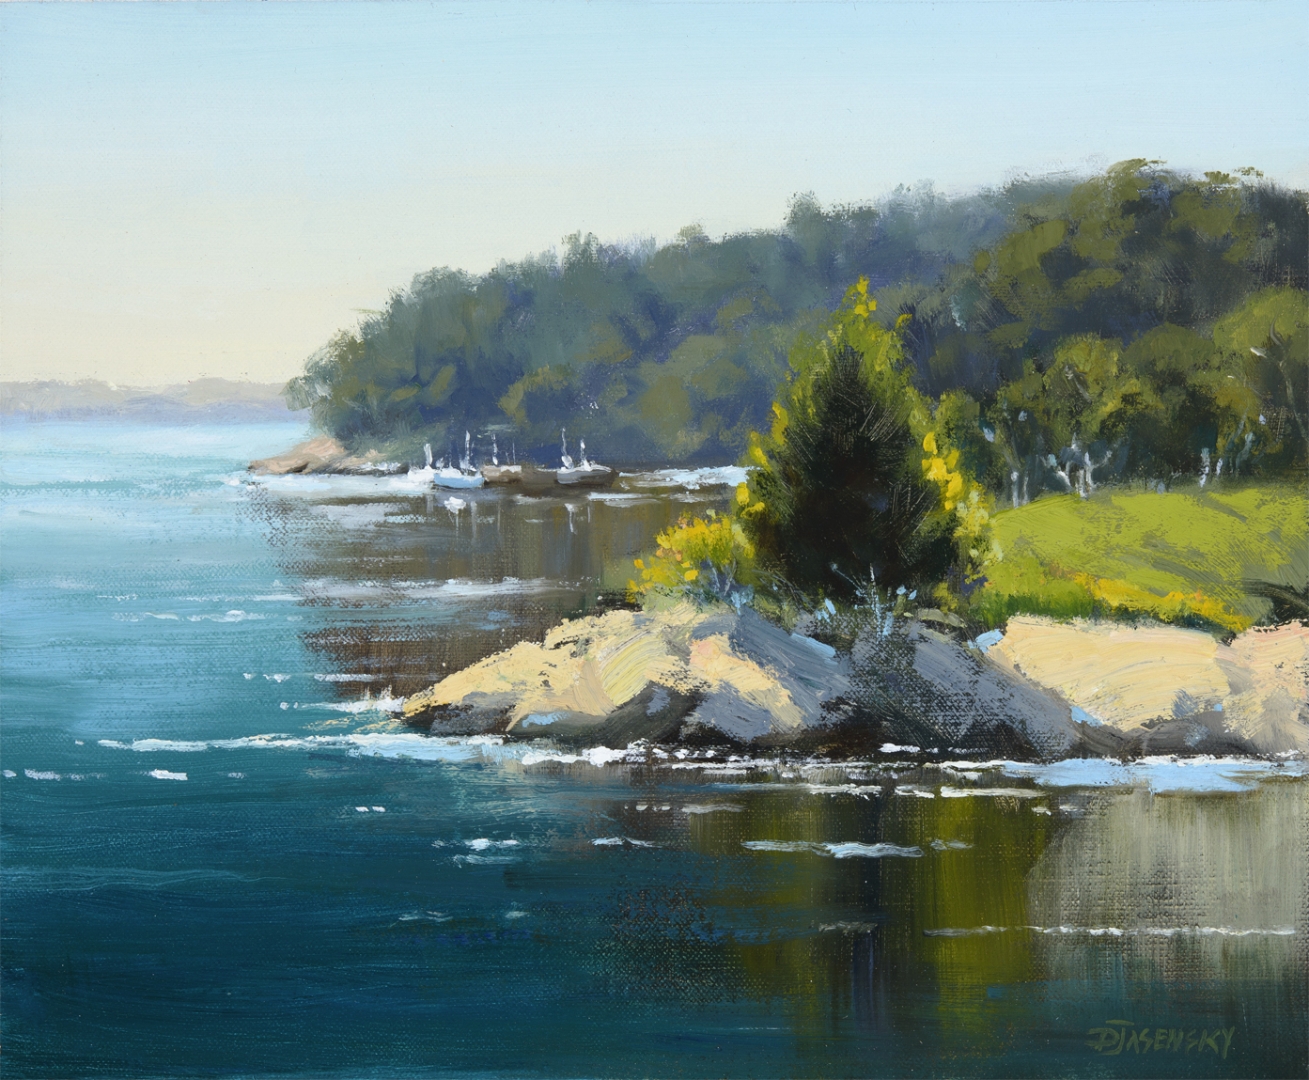 Painting of Penobscot Bay in Camden, Maine